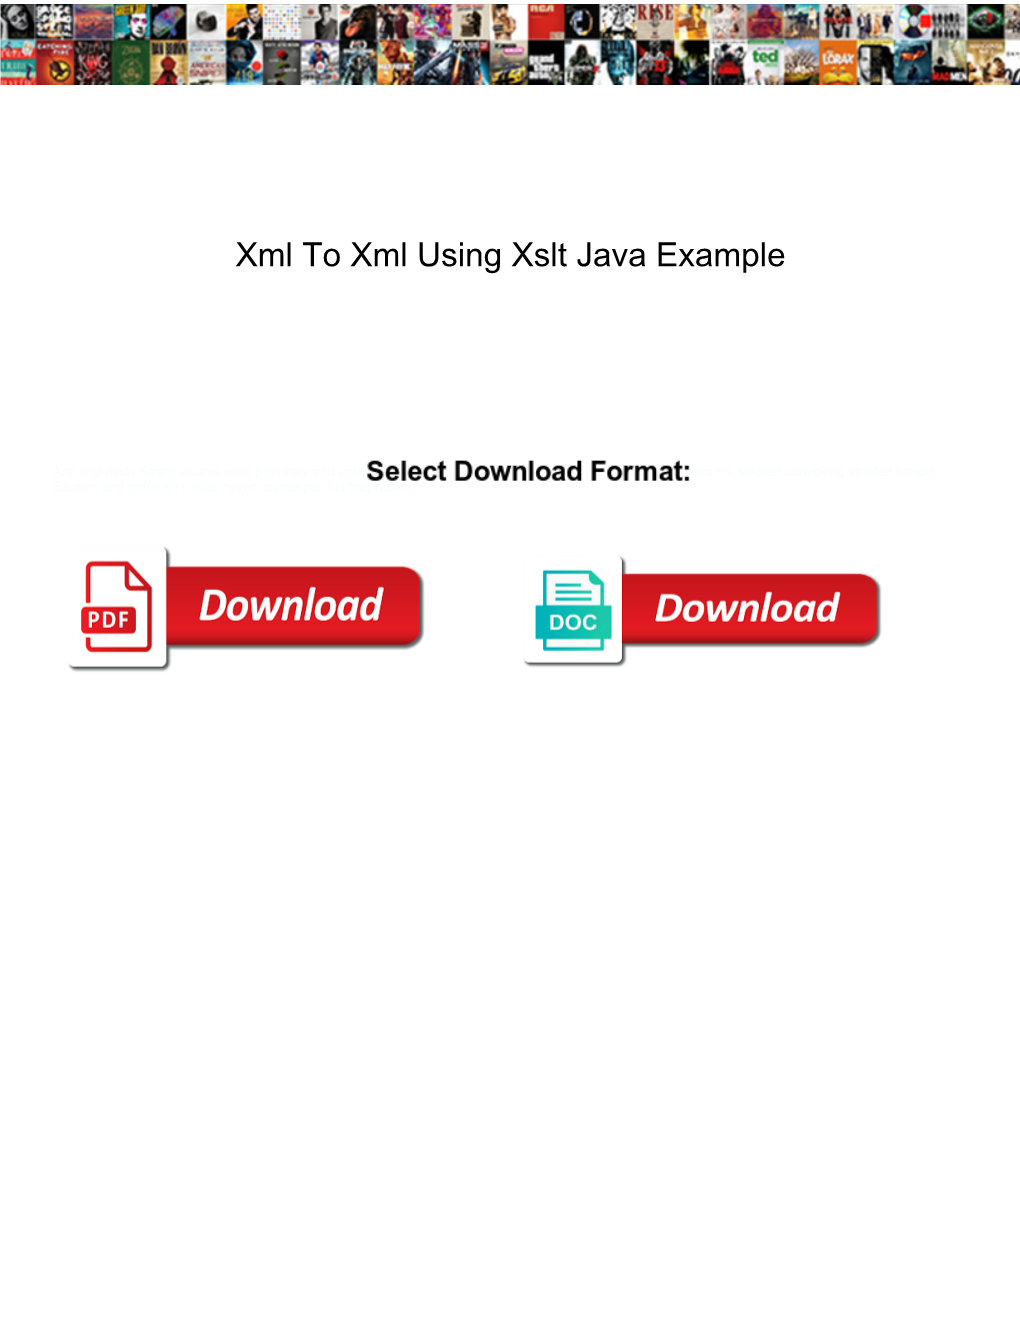 Xml to Xml Using Xslt Java Example